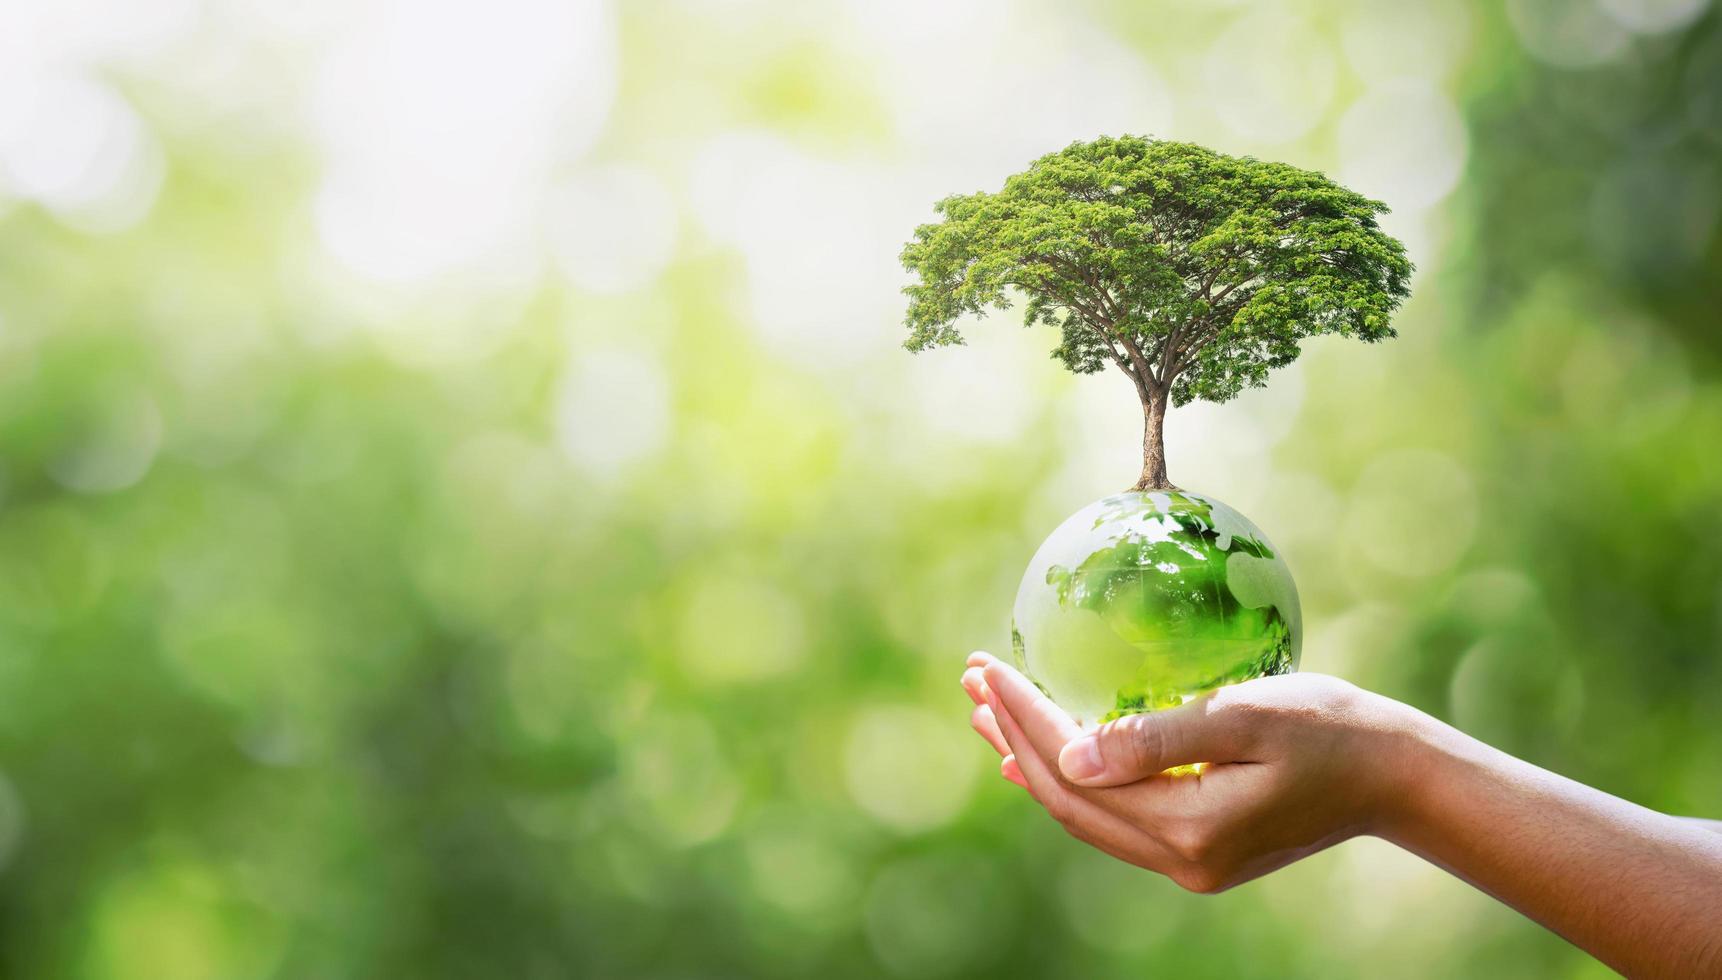 mano que sostiene el globo de cristal con la plantación de árboles y el concepto ecológico de naturaleza verde borrosa foto